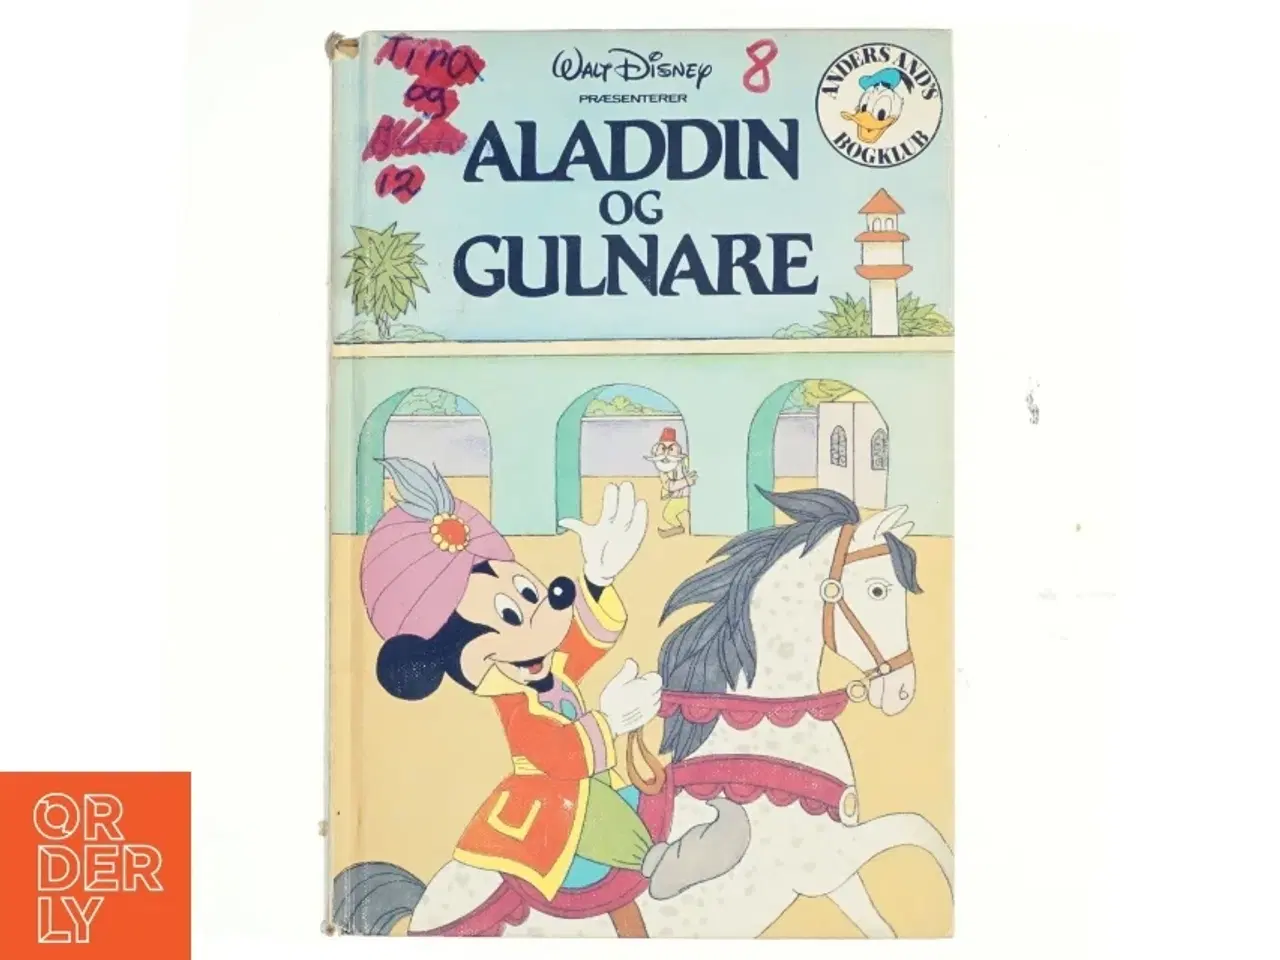 Billede 1 - Aladdin og Gulnare fra Walt Disney